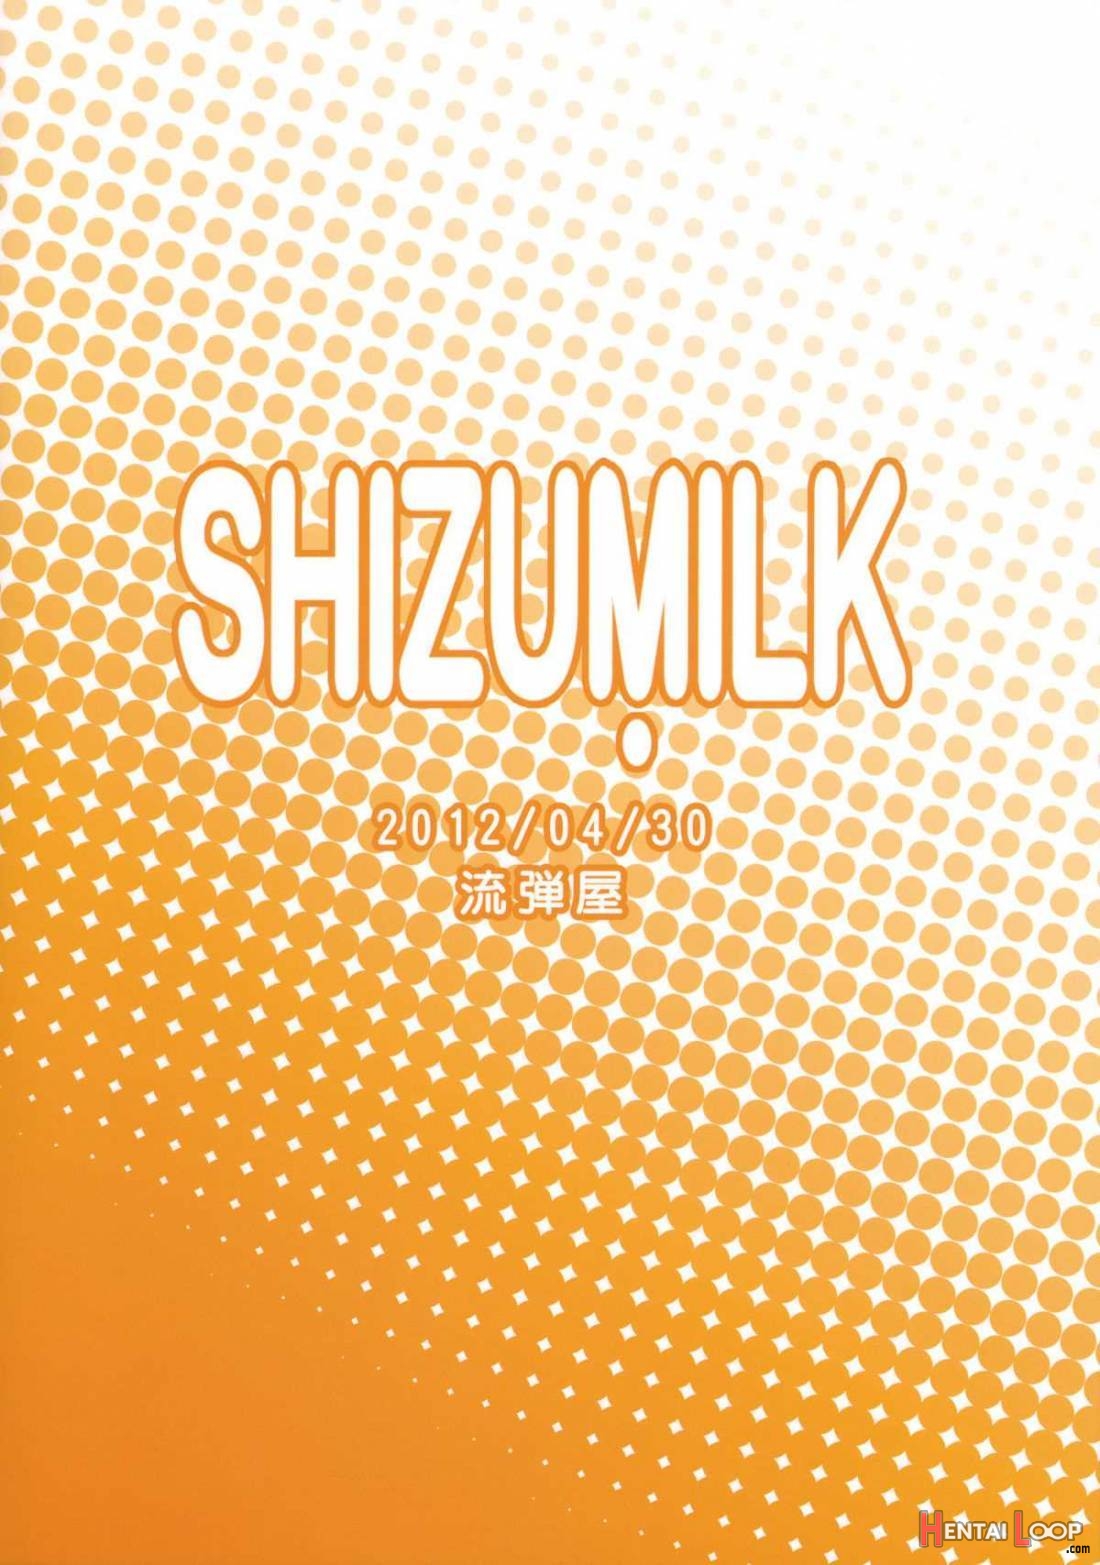 SHIZUMILK page 15